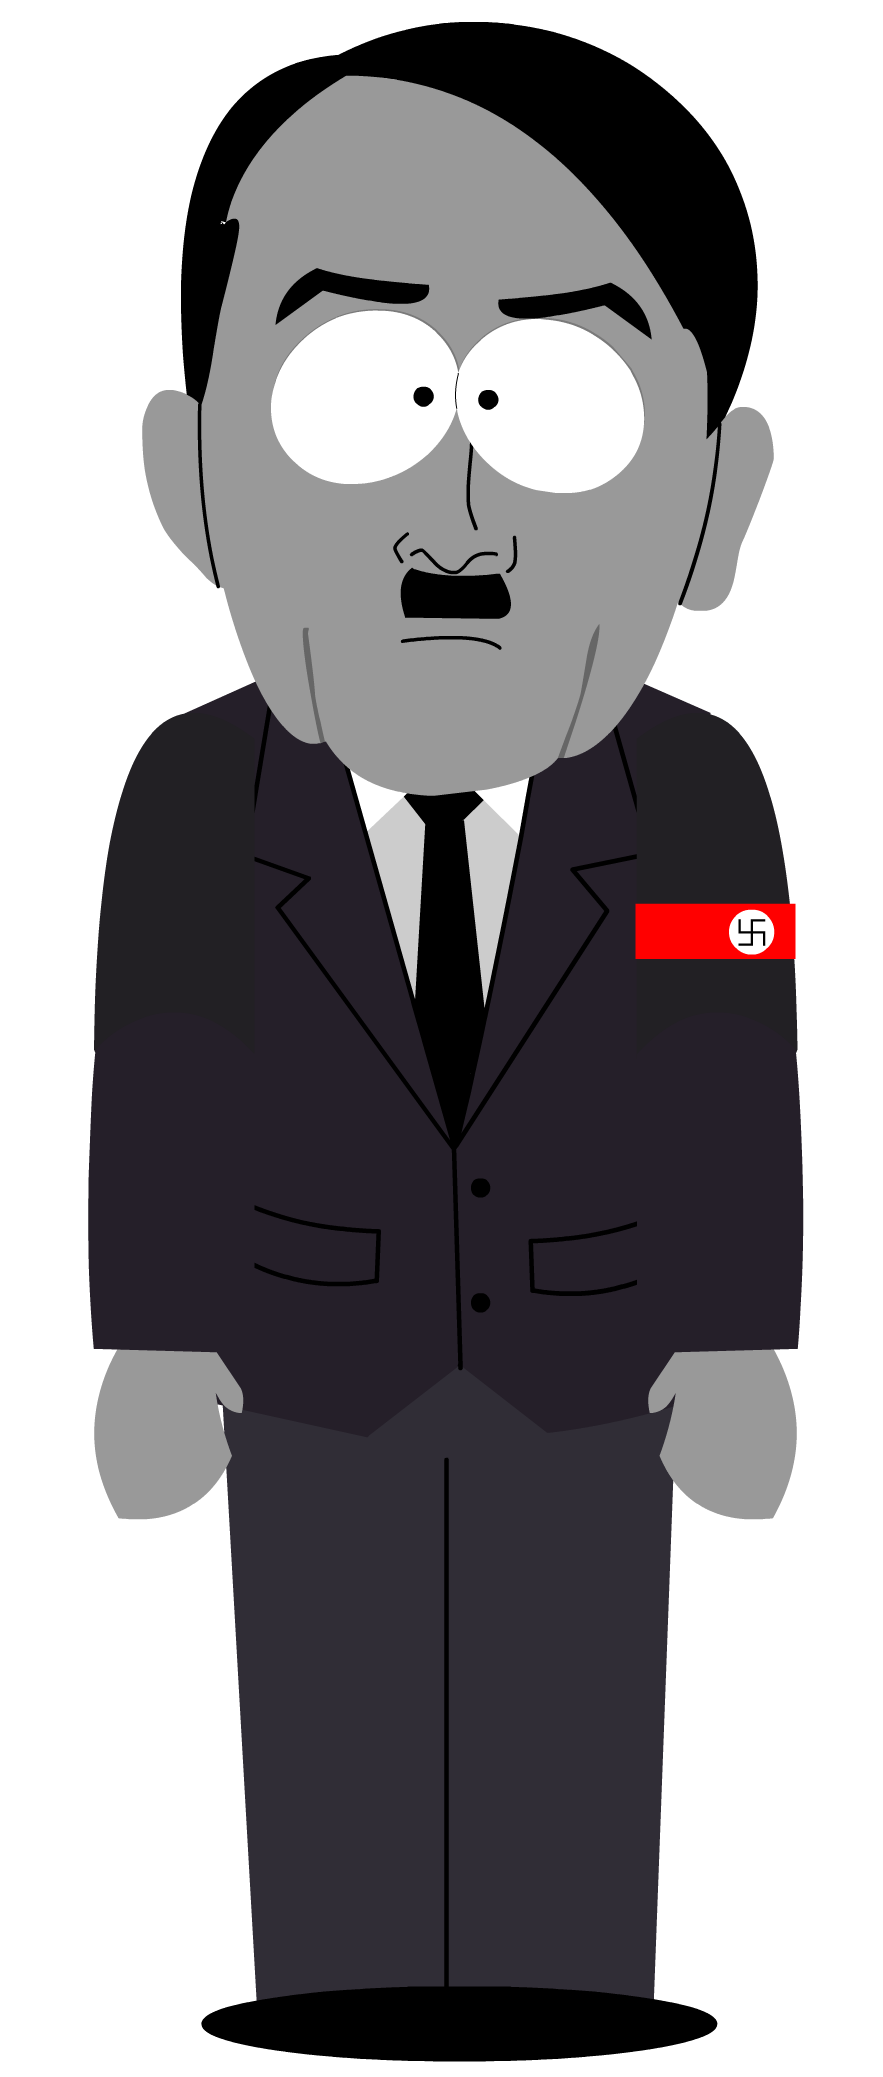 Hitler PNG Image Transparent Background